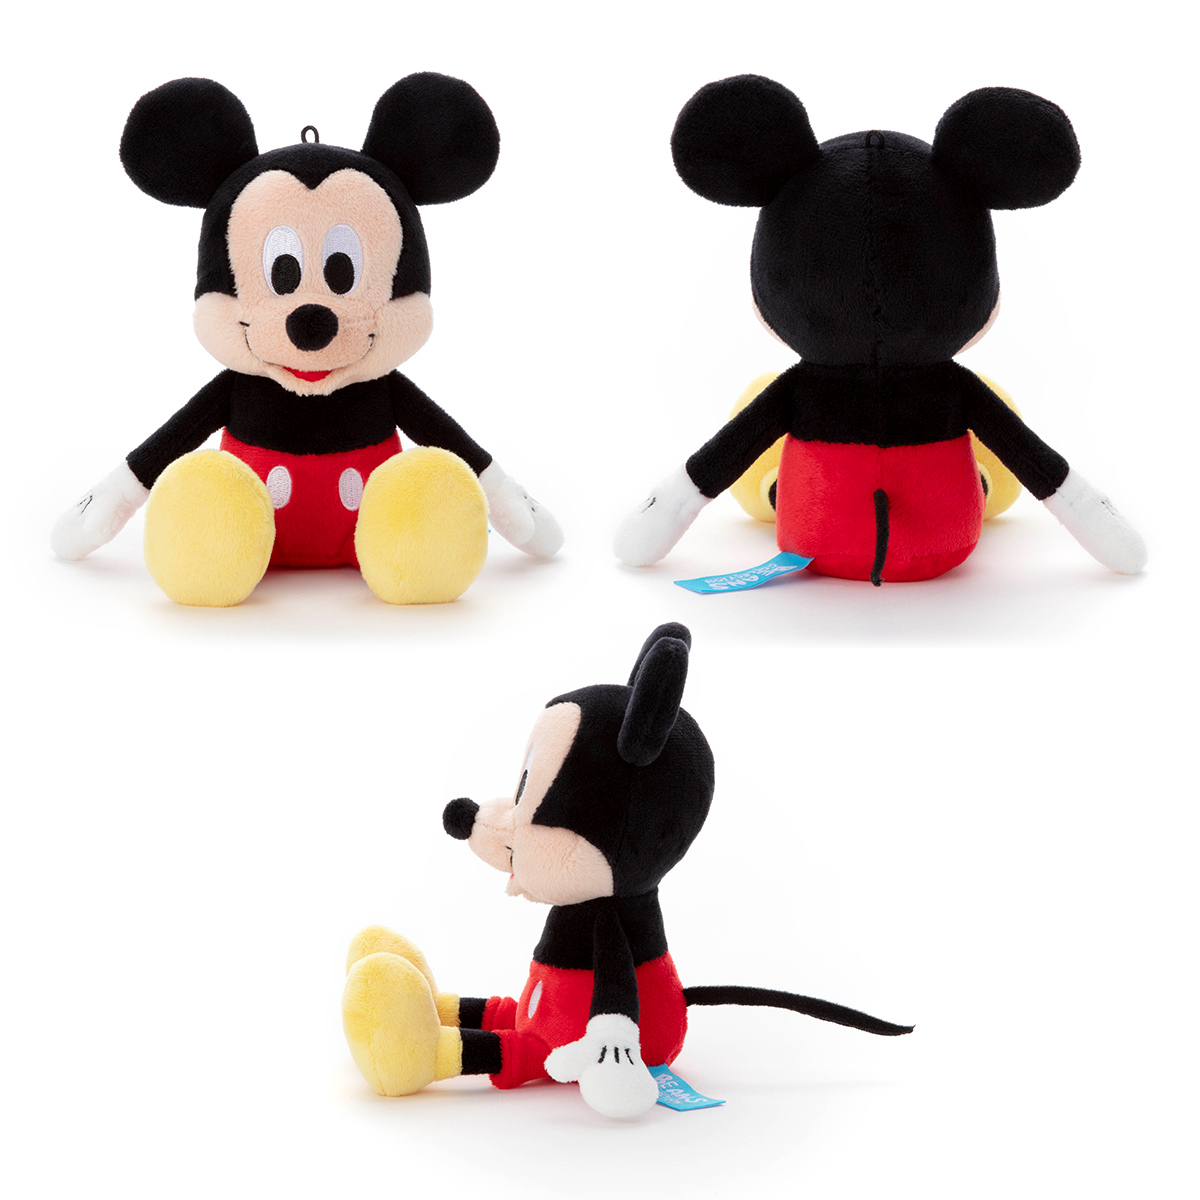 ディズニー ピクサーキャラクター 洗えるビーンズコレクション ミッキーマウス 商品情報 タカラトミーアーツ